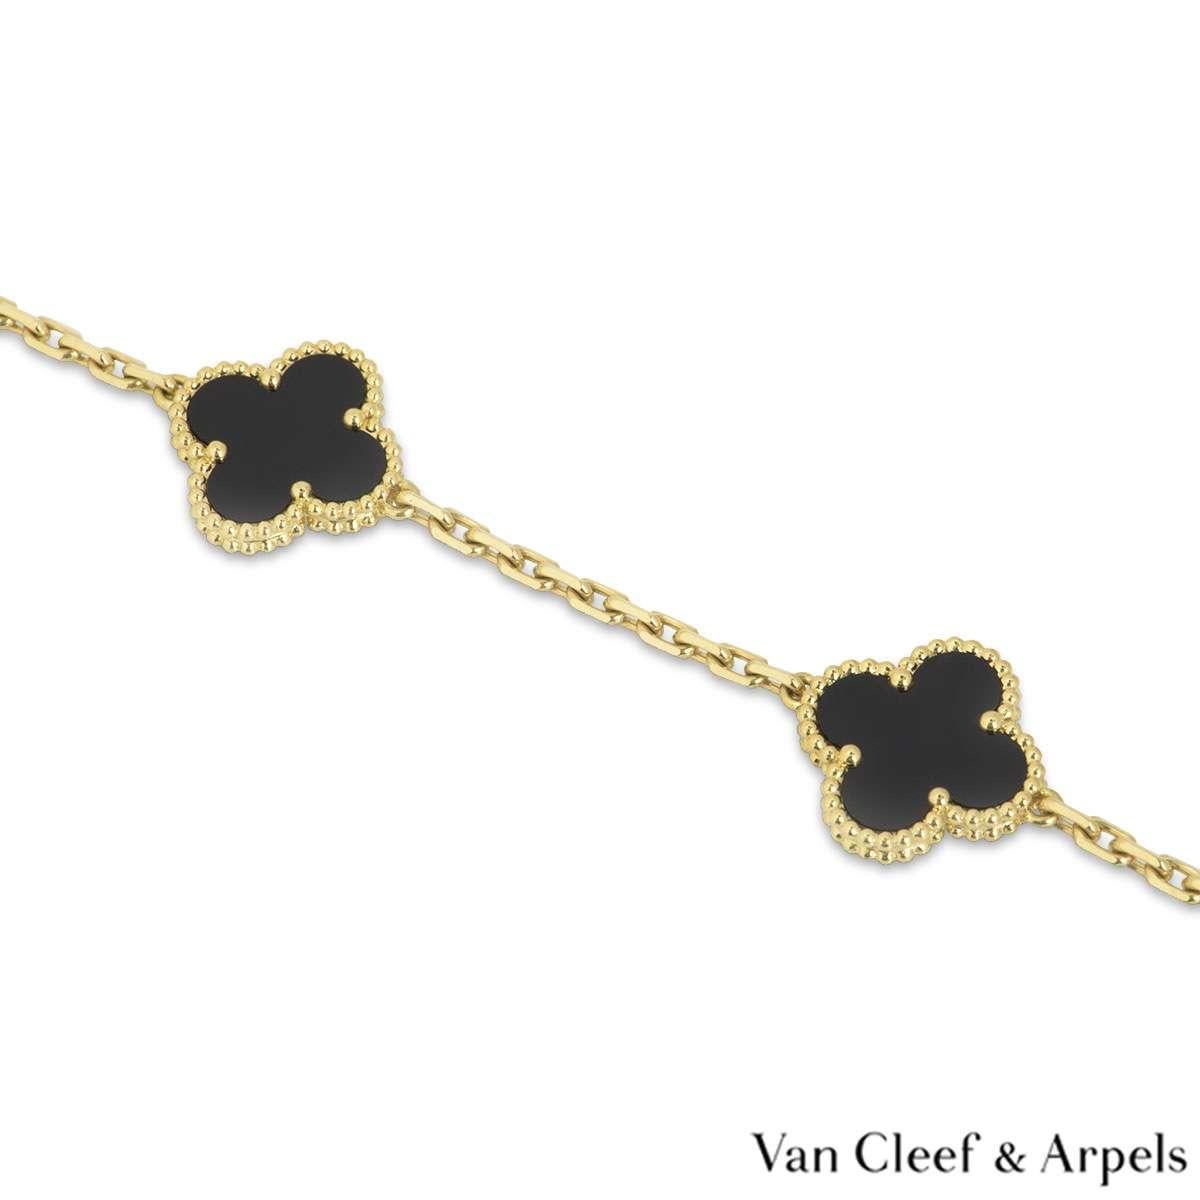 van cleef and arpels clover necklace